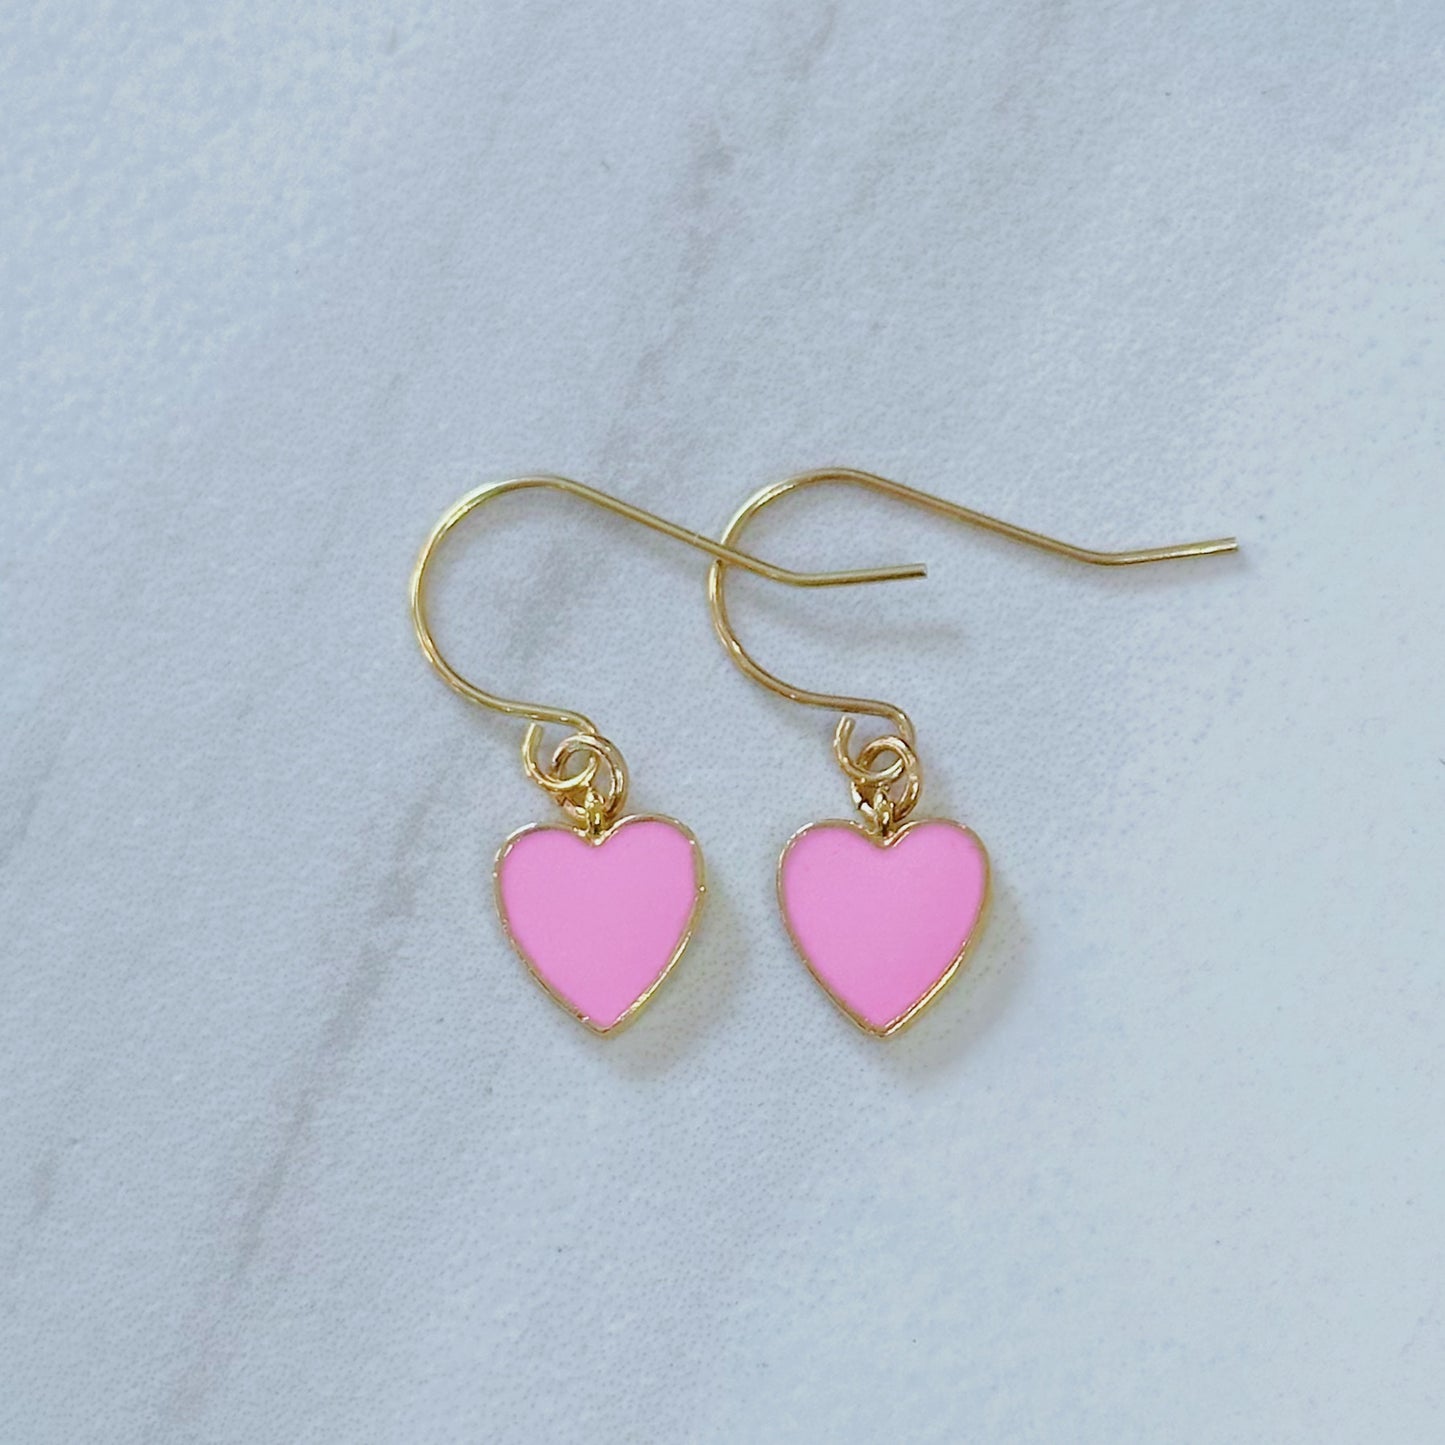 Dainty pink heart dangle earrings